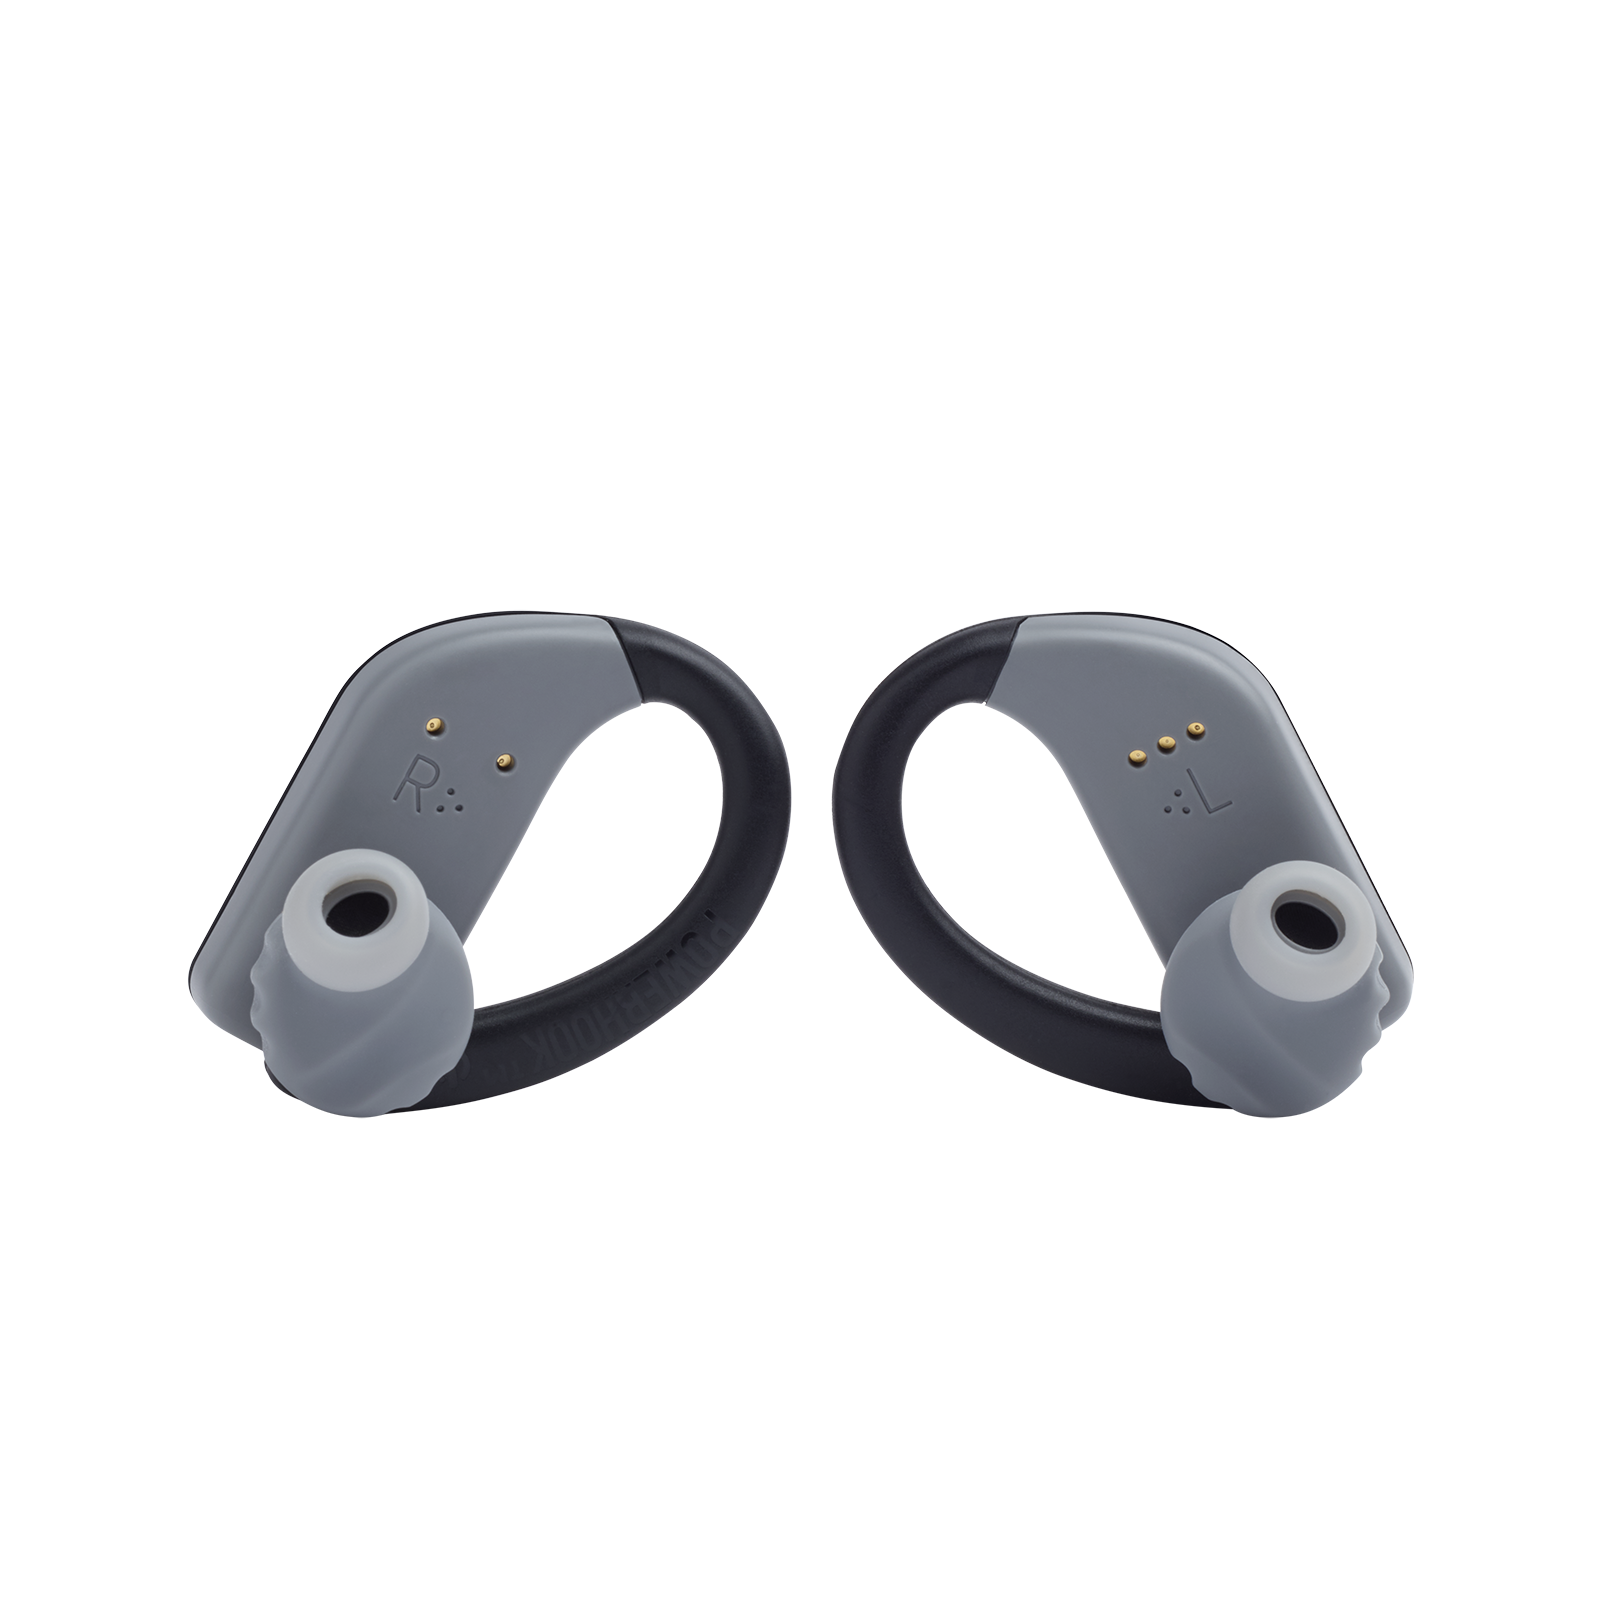 JBL Endurance PEAK - Black - Waterproof True Wireless In-Ear Sport Headphones - Back